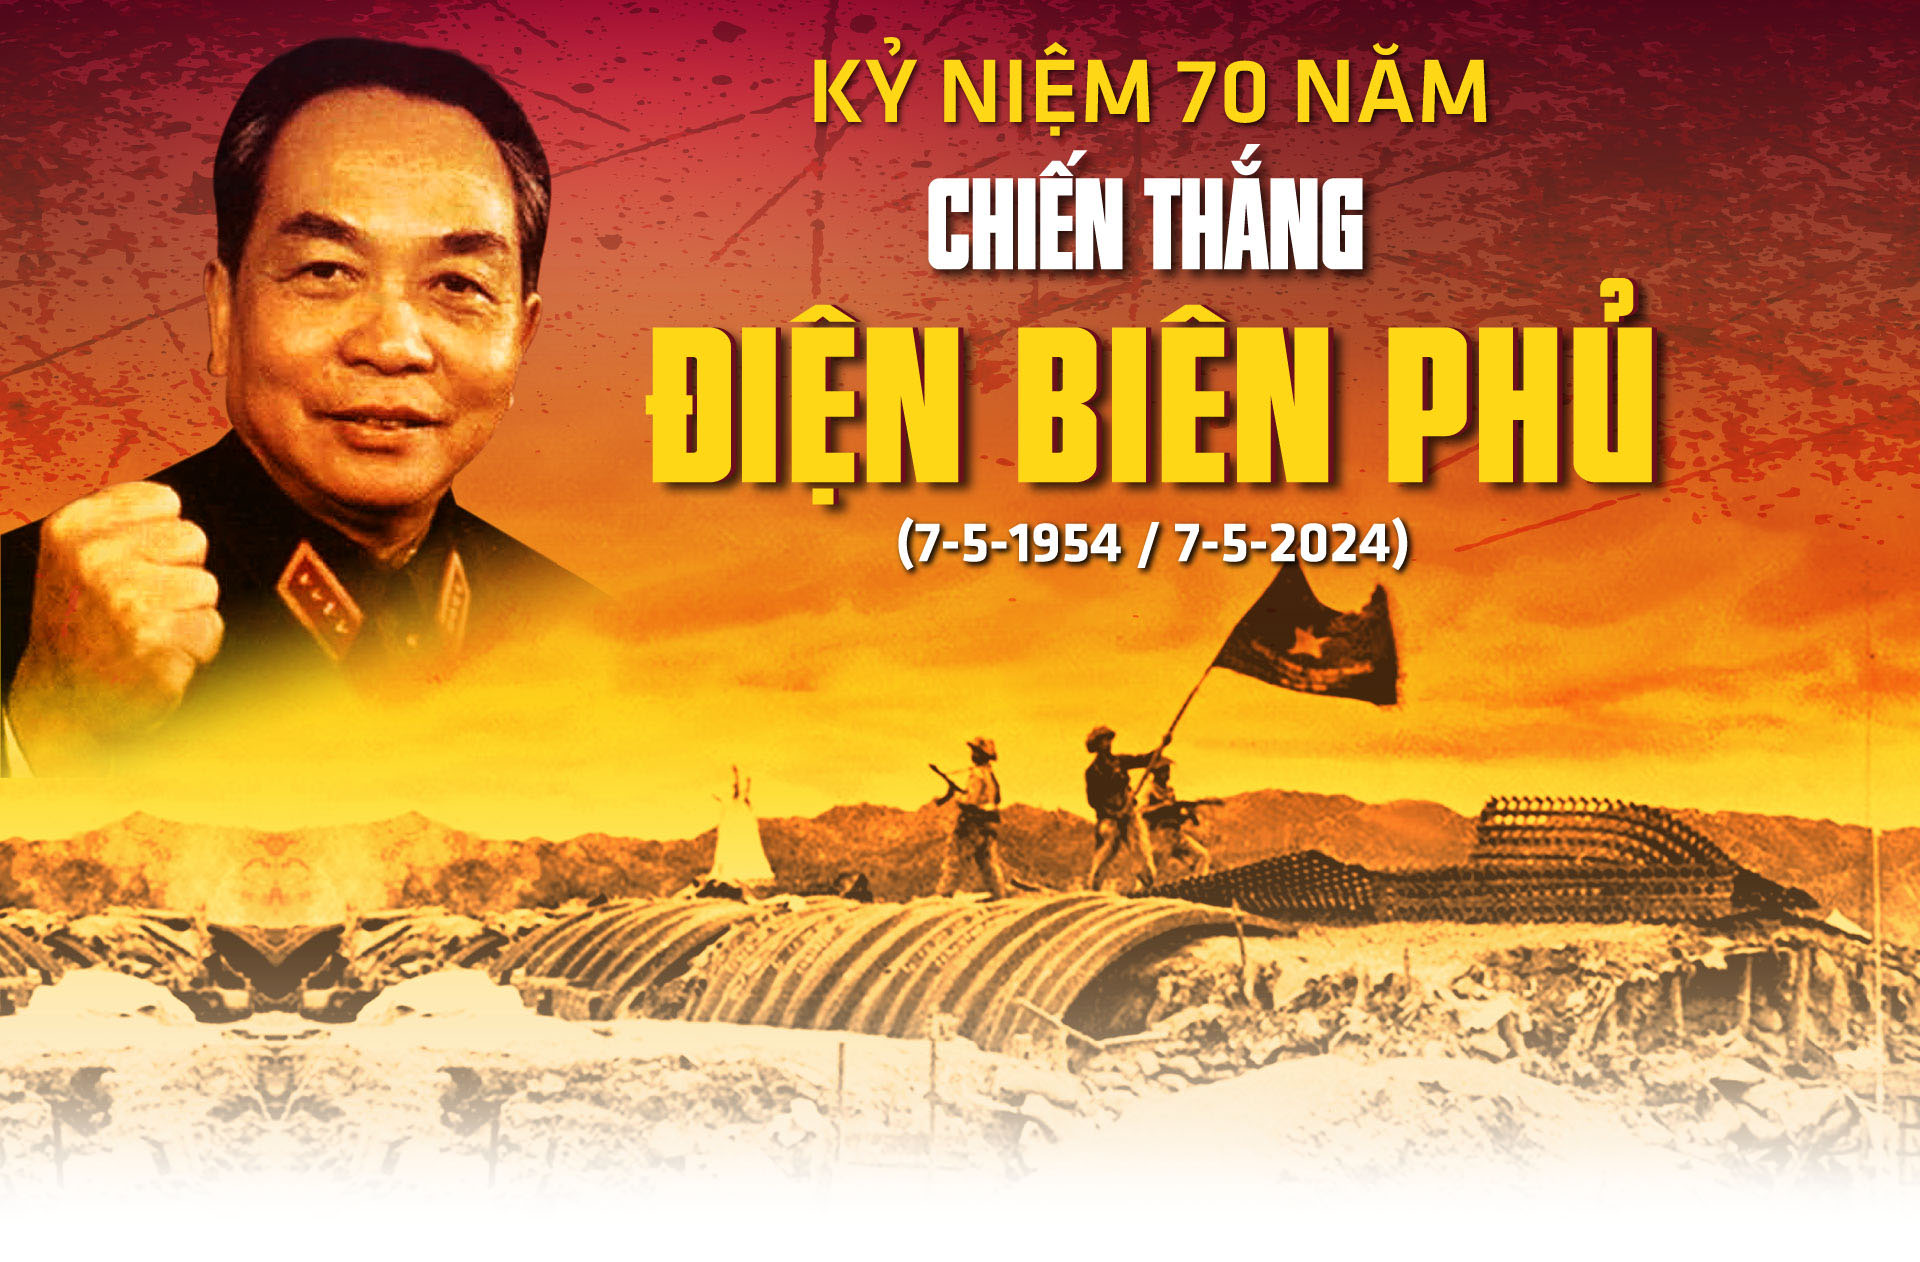 KỶ NIỆM 70 NĂM CHIẾN THẮNG ĐIỆN BIÊN PHỦ (7/5/1954 - 7/5/2024):: Chiến thắng Điện Biên Phủ - Biểu tượng và đỉnh cao của văn hóa giữ nước Việt Nam